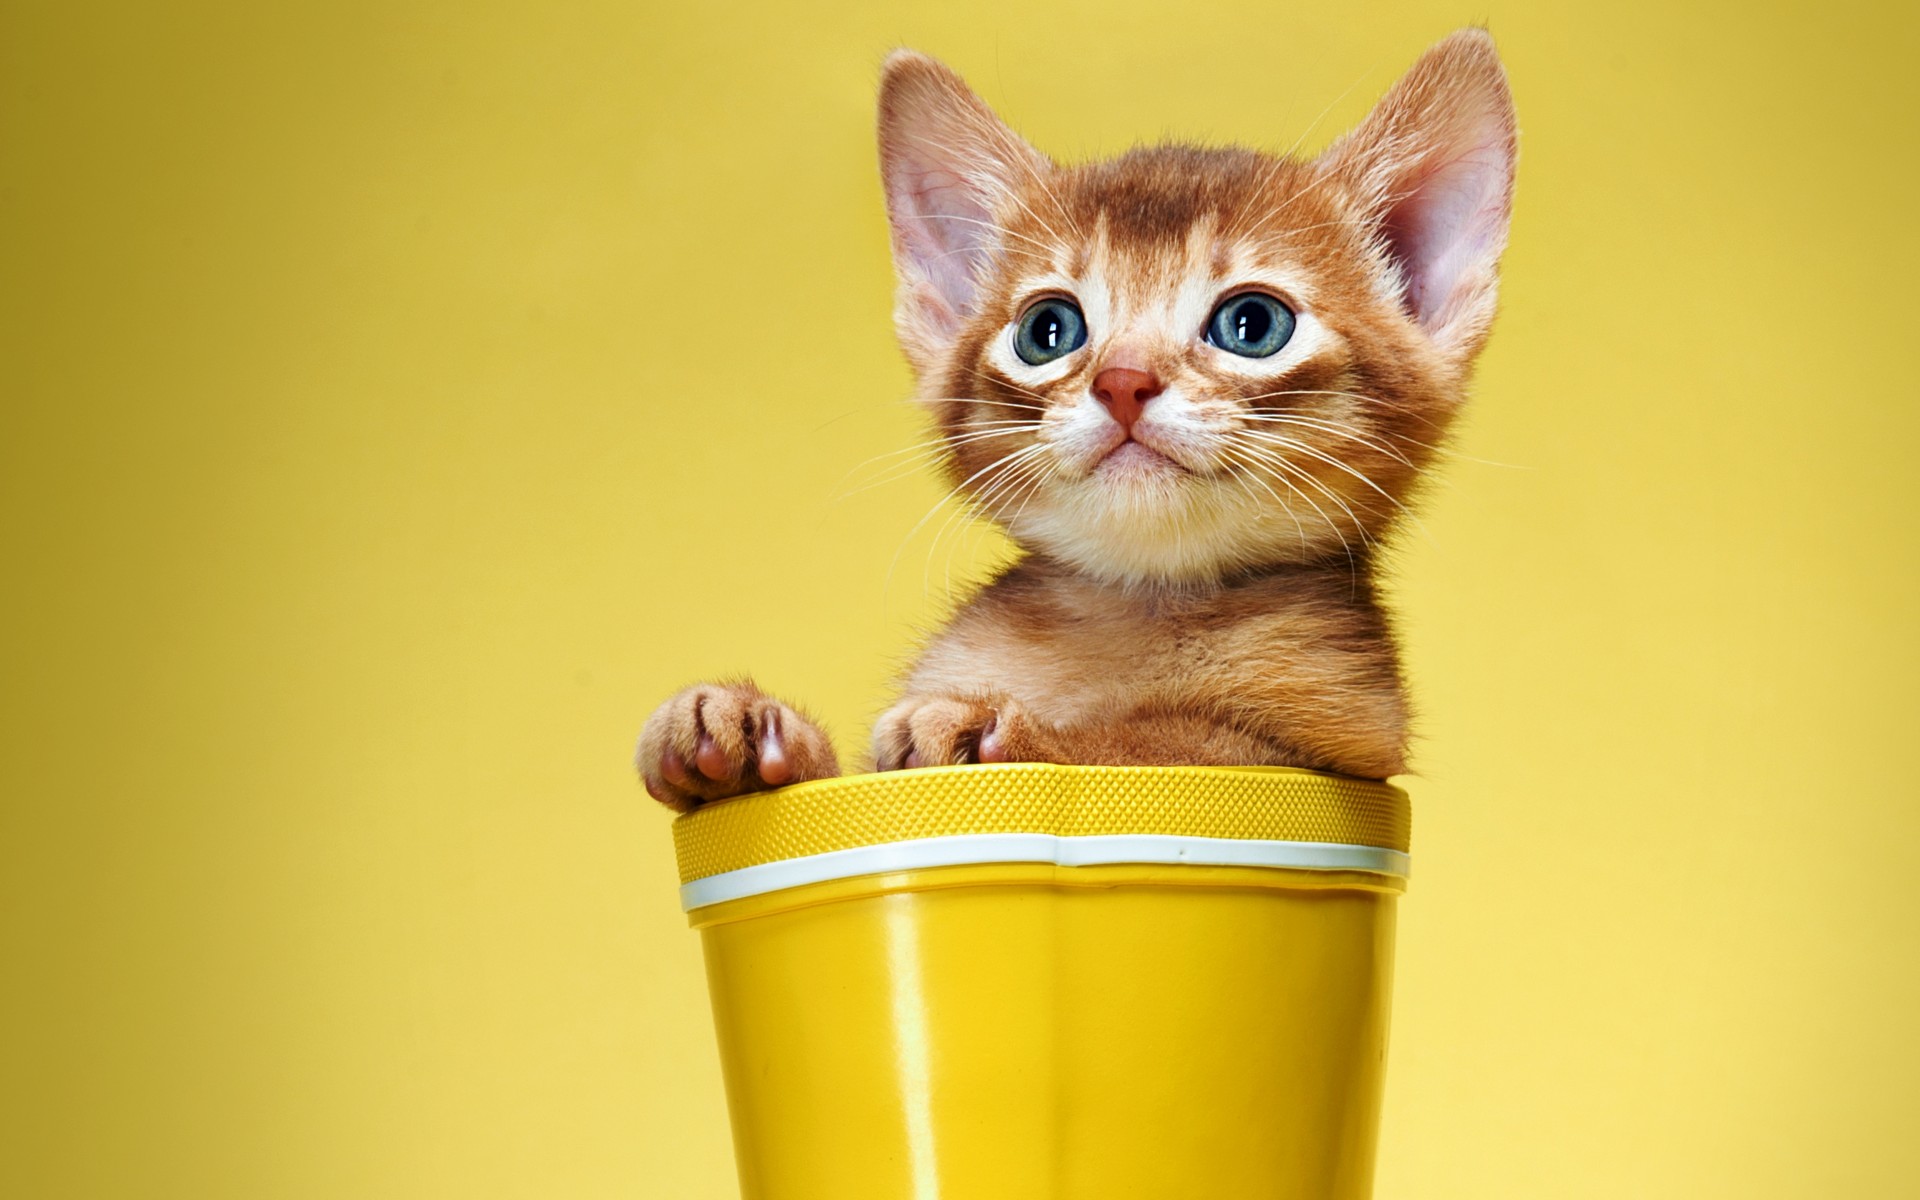 Фото бесплатно котенок в вазе, рыжий котенок, желтый фон, домашние питомцы